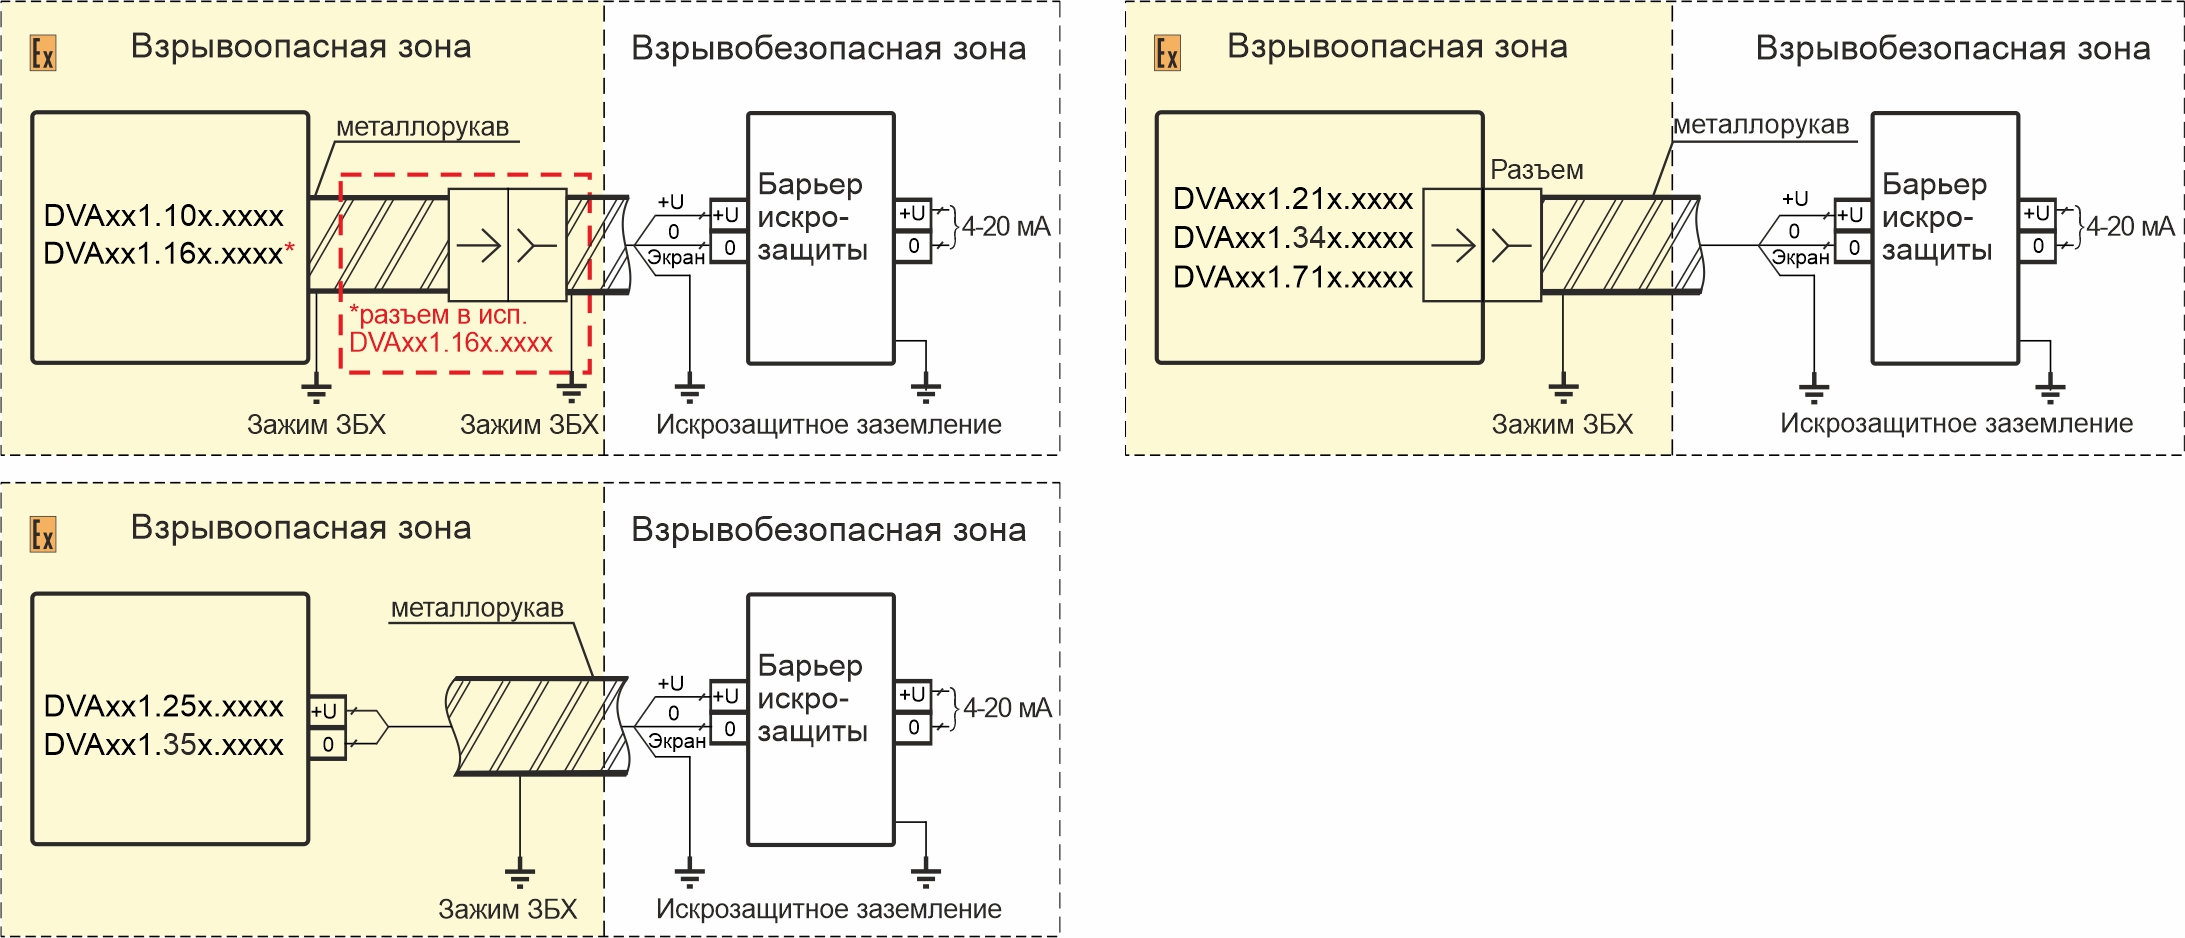 Схемы подключения вибропреобразователей DVA121.3XX